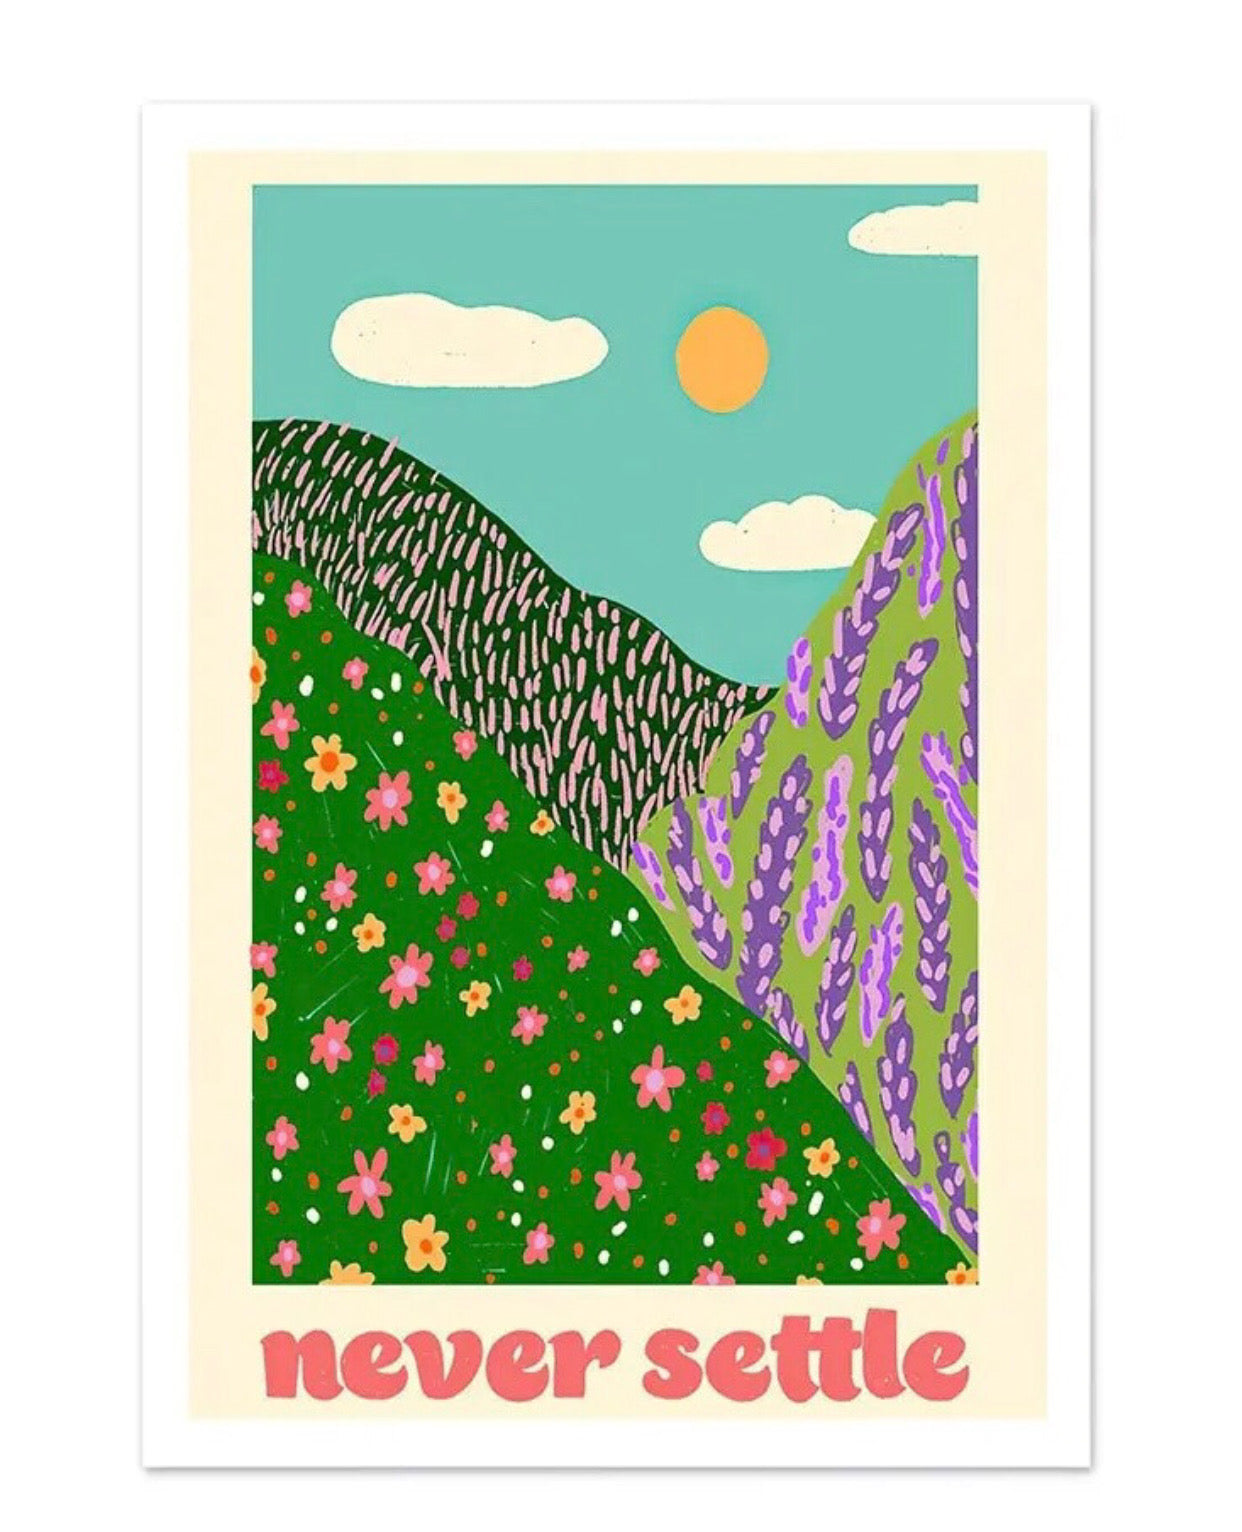 " never settle" poster